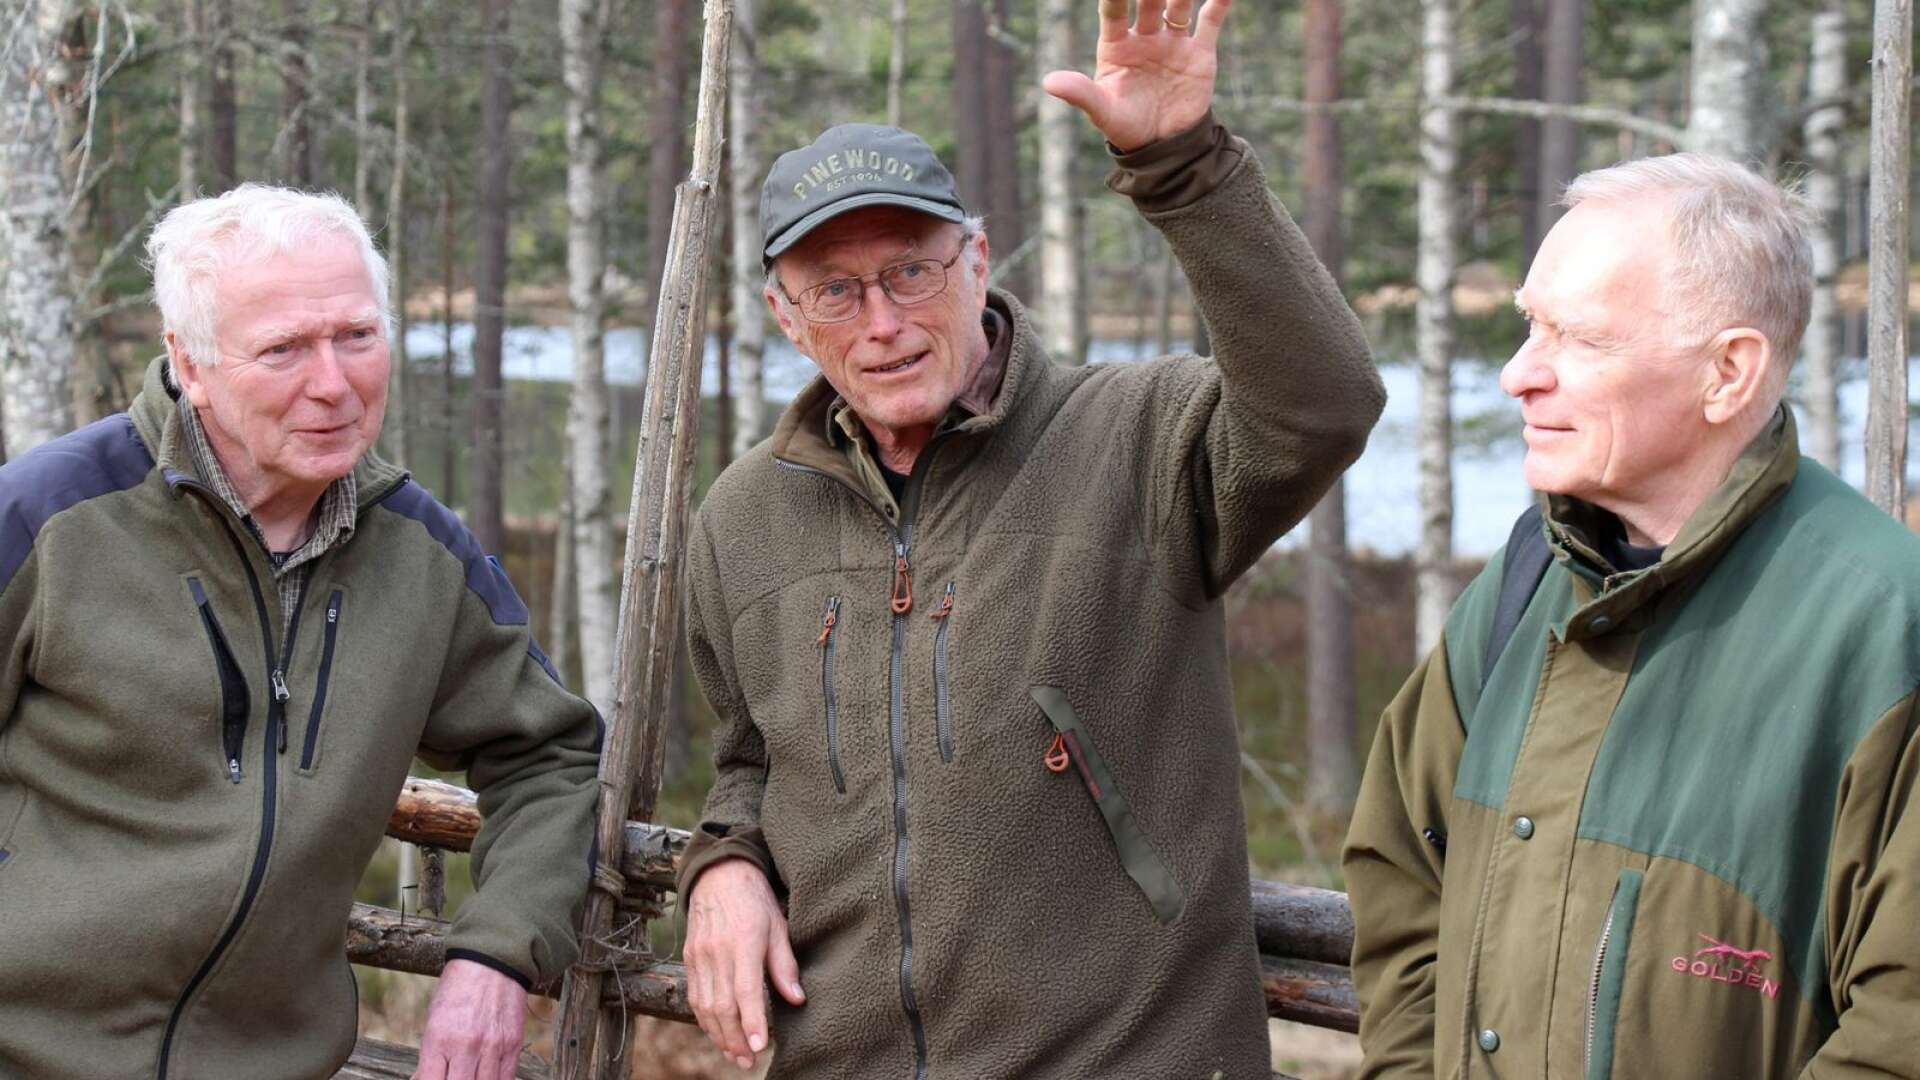 Hjobon Göran Alm samt Ola Högberg och Björn Obenius har tillsammans gjort dokumentärfilmen ”Tiveden – Djur, natur och människor” som visas på Park.